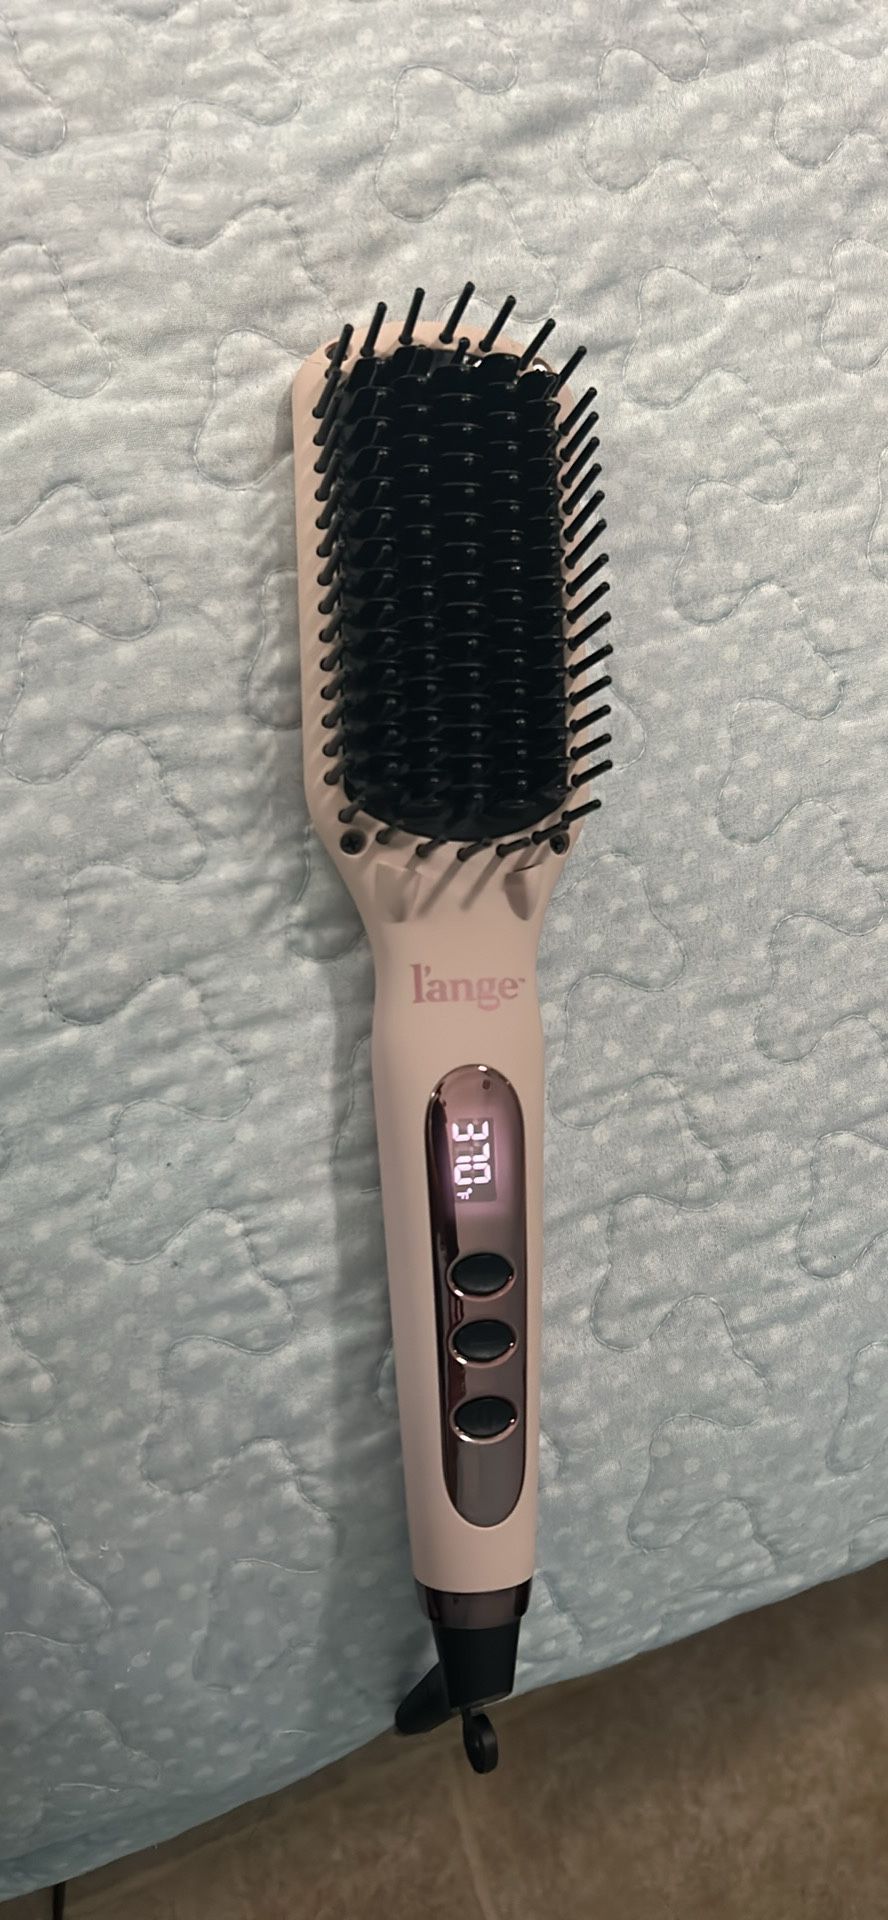 L’ange Hair Brush